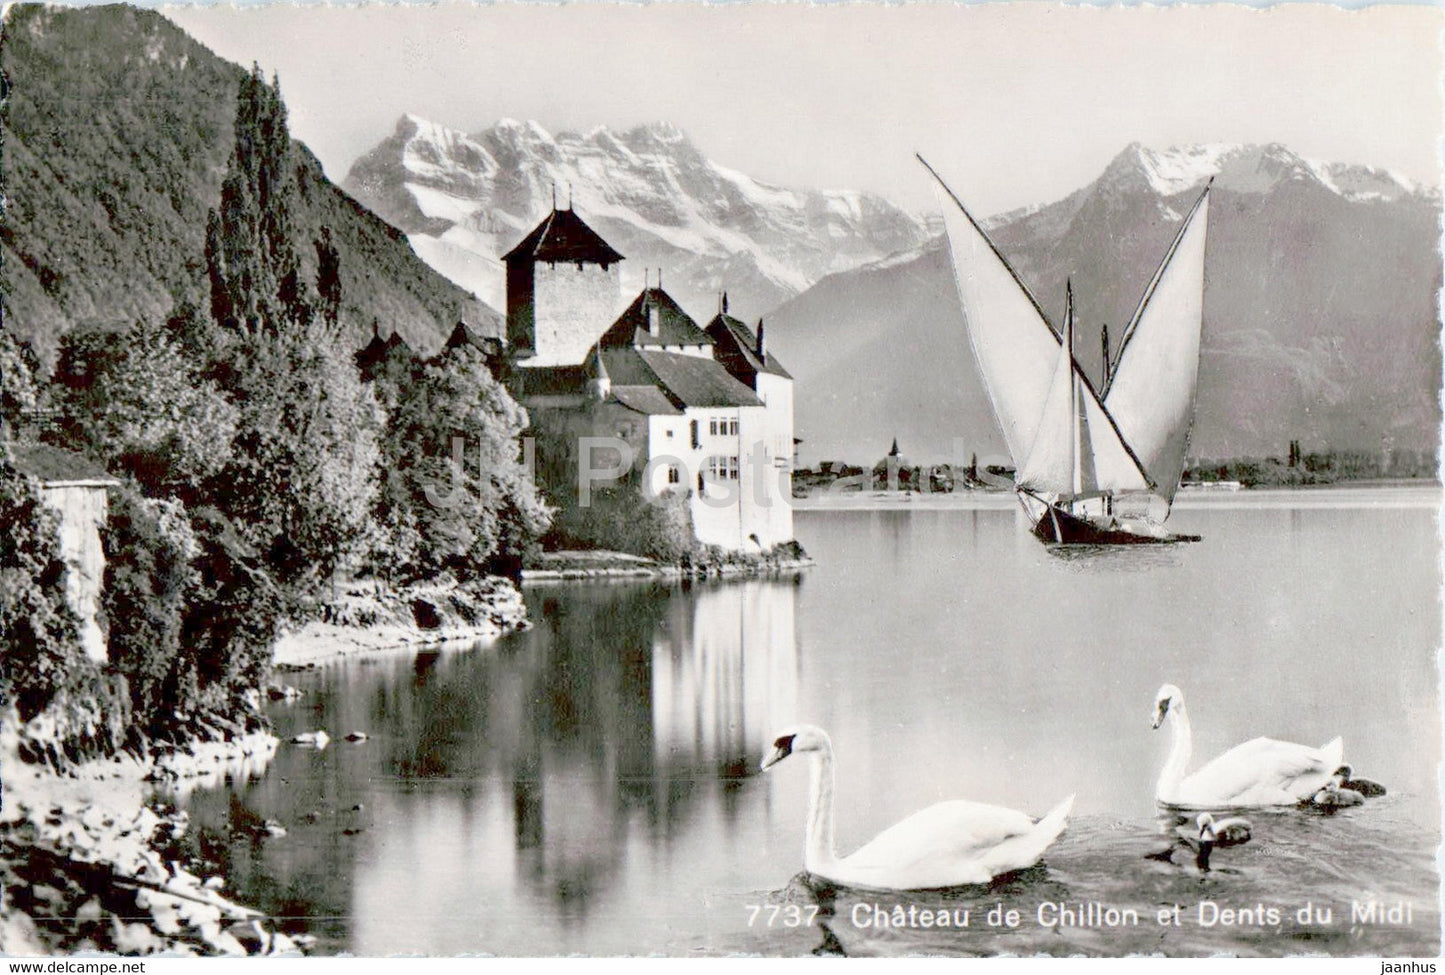 Chateau de Chillon et Dents du Midi - birds swan - sailing boat - castle - 7737 1946 - old postcard - Switzerland - used - JH Postcards